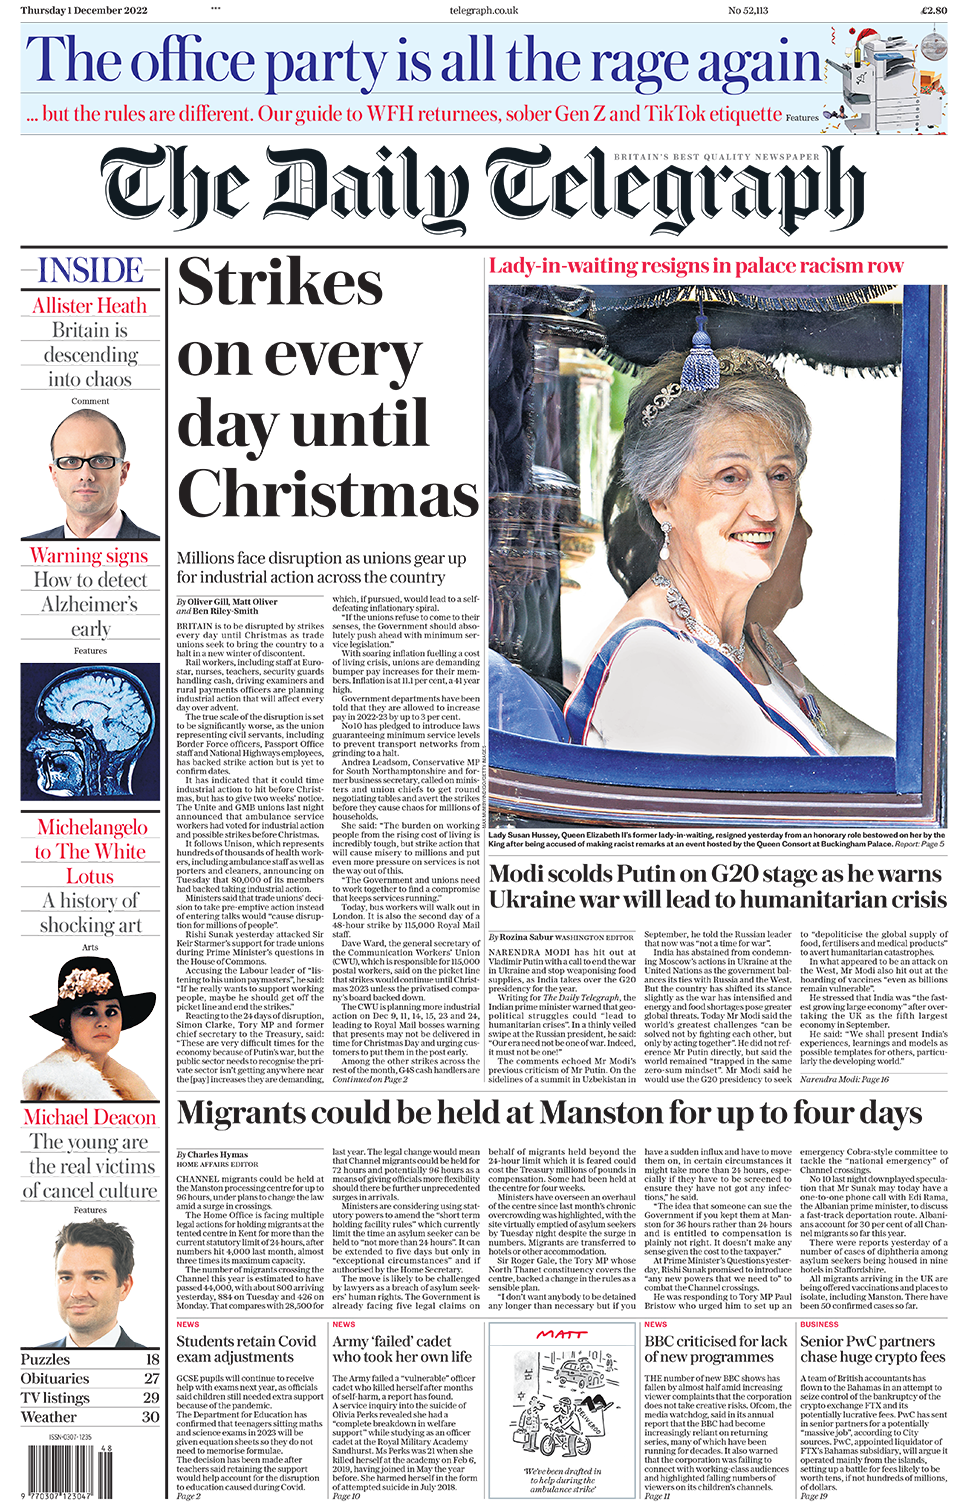 Главный заголовок на первой странице Daily Telegraph гласит: «Забастовки каждый день до Рождества»